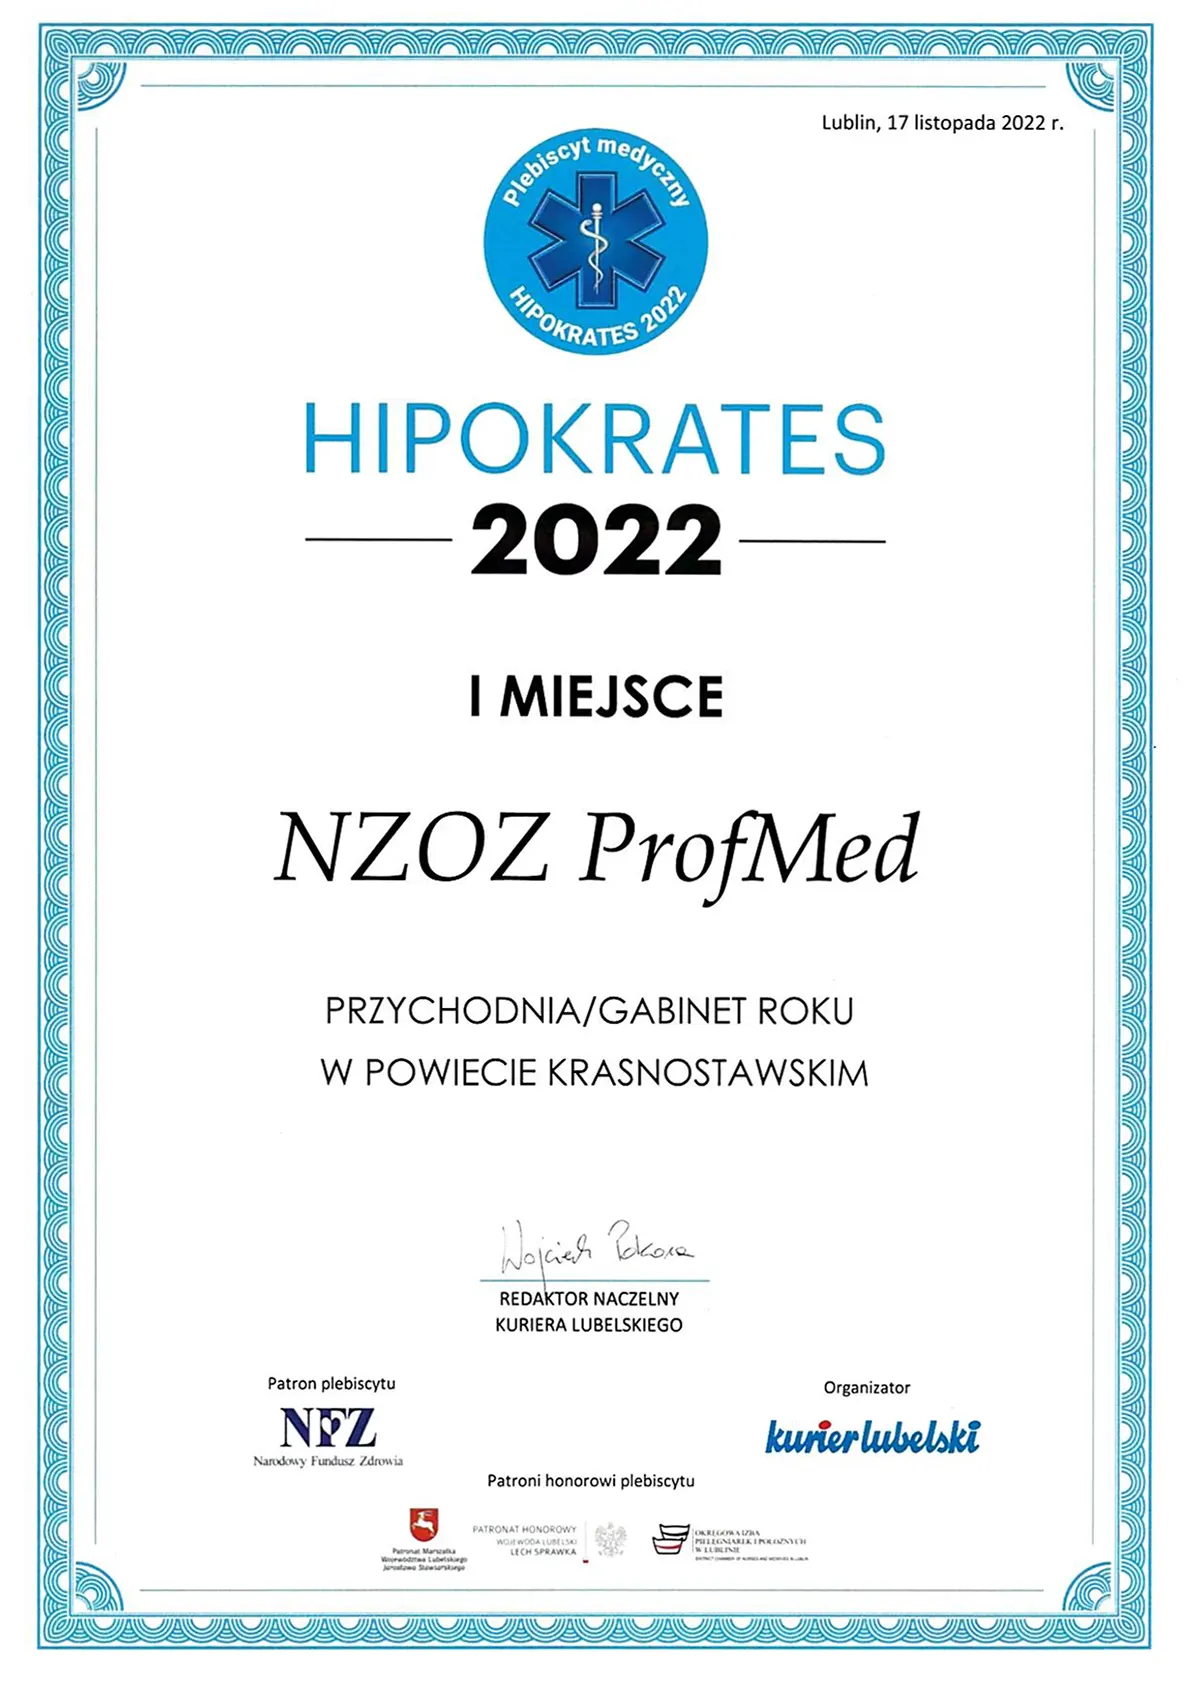 Hipokrates 2022